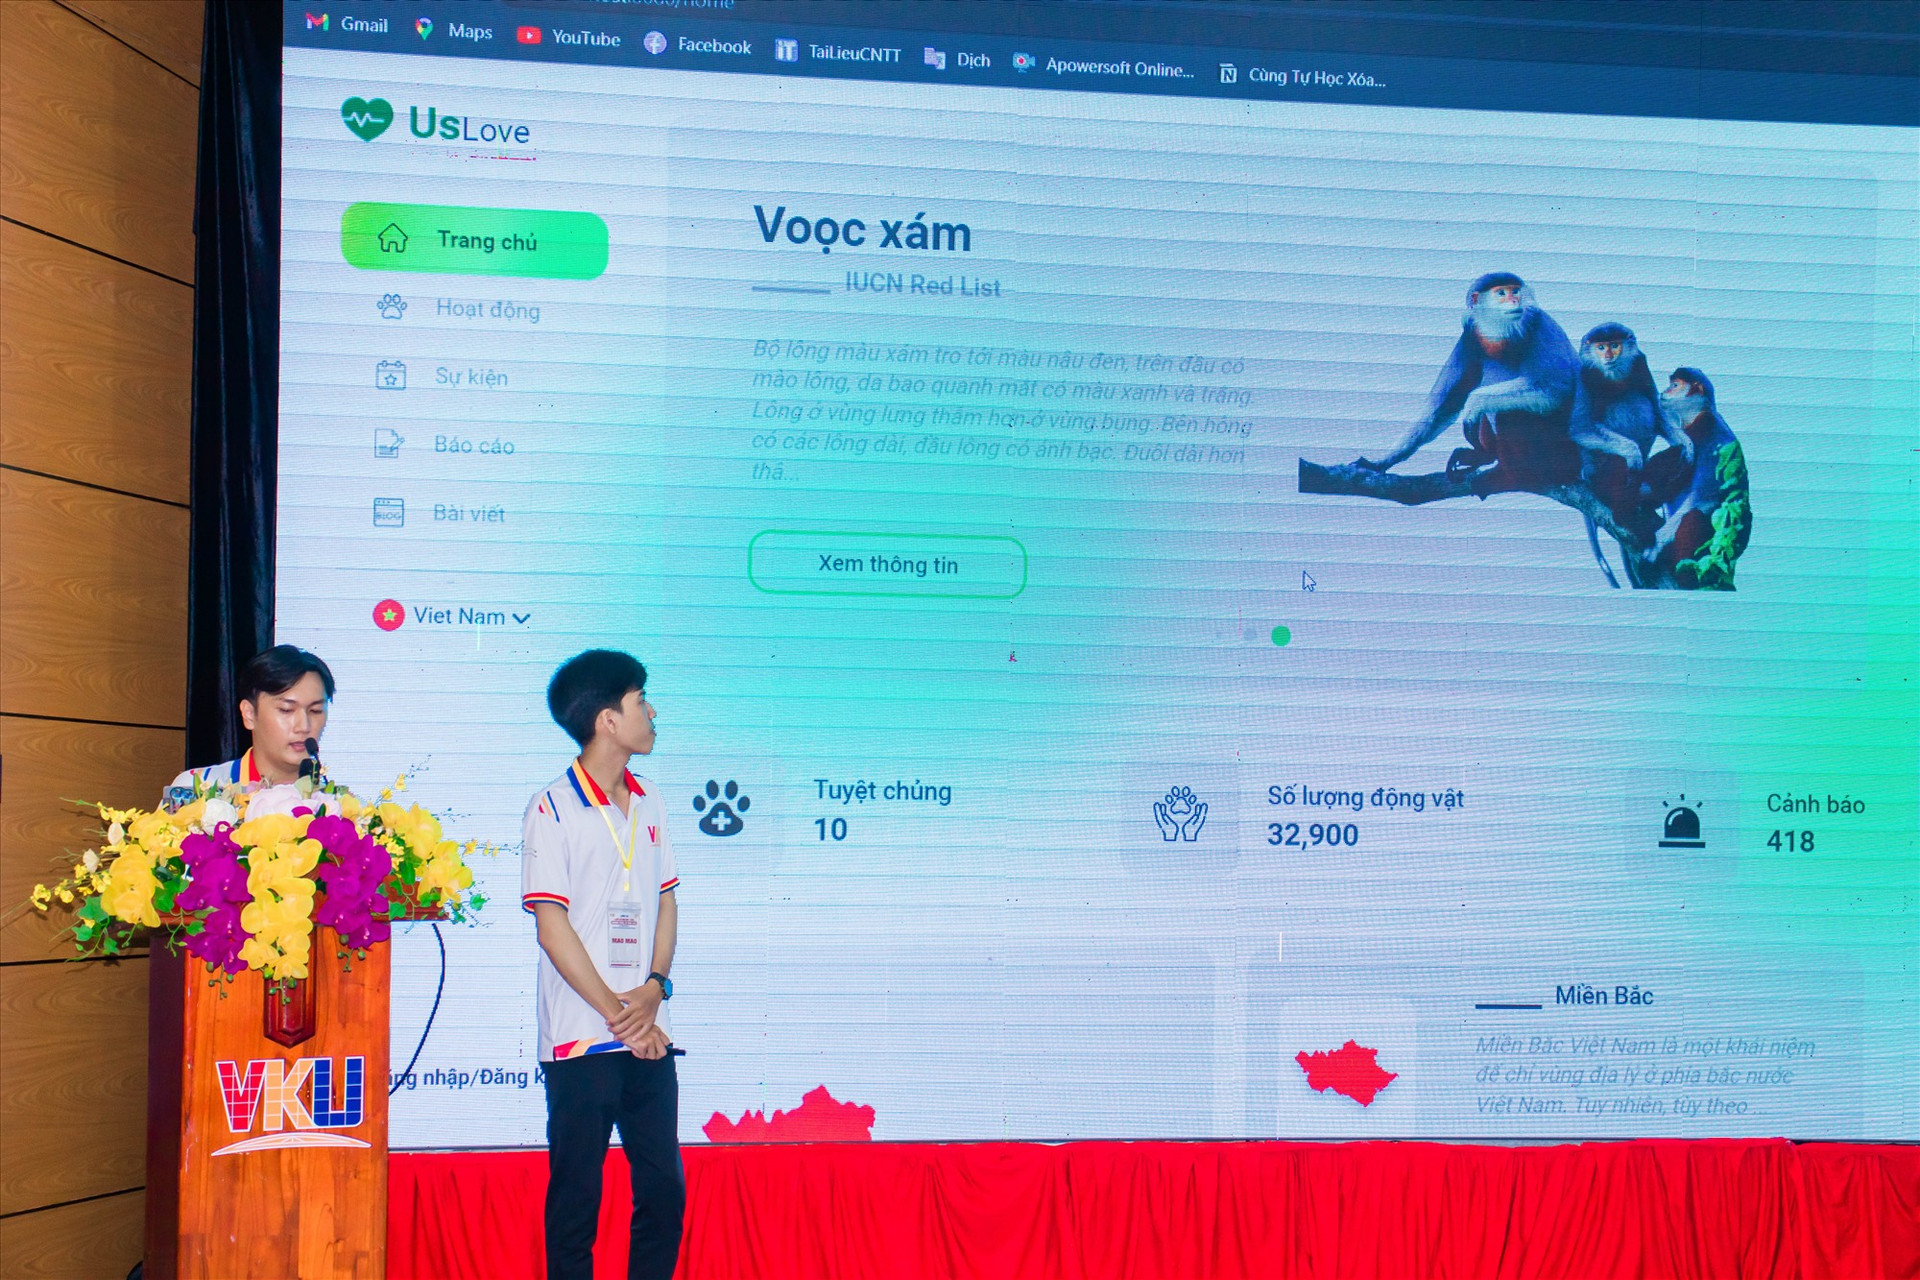 Các thành viên của đội Mao Mao trình bày sản phẩm web mang tên Us Love (về bảo vệ động vật hoang dã) tại cuộc thi. Ảnh: H.S